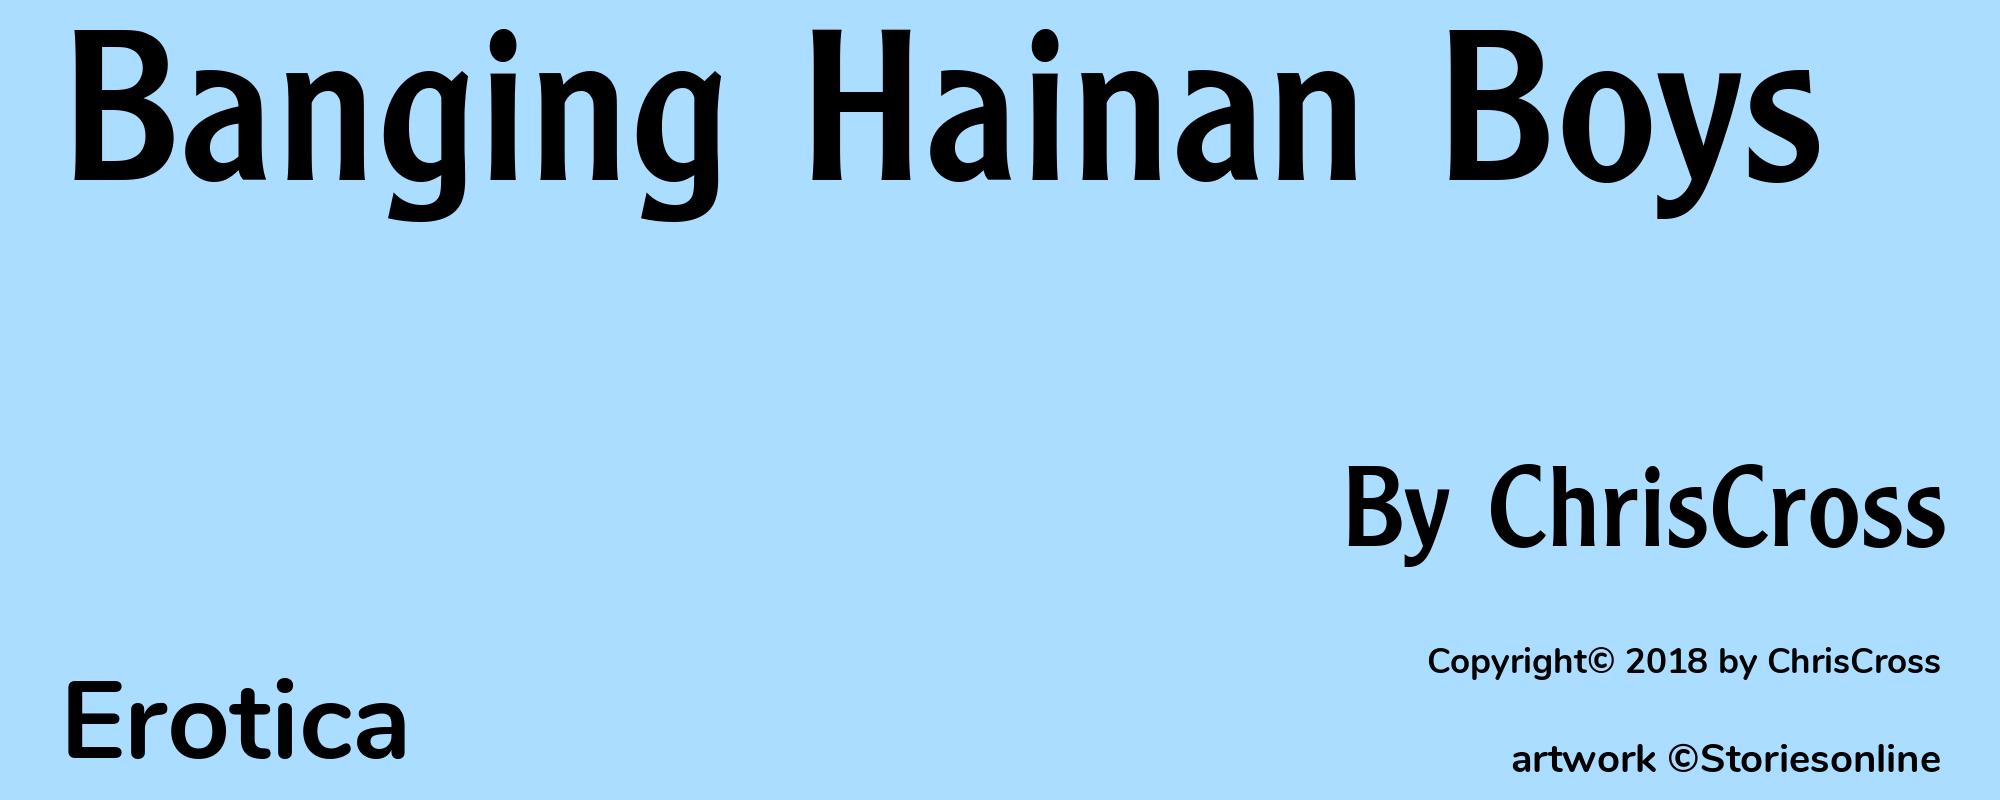 Banging Hainan Boys - Cover